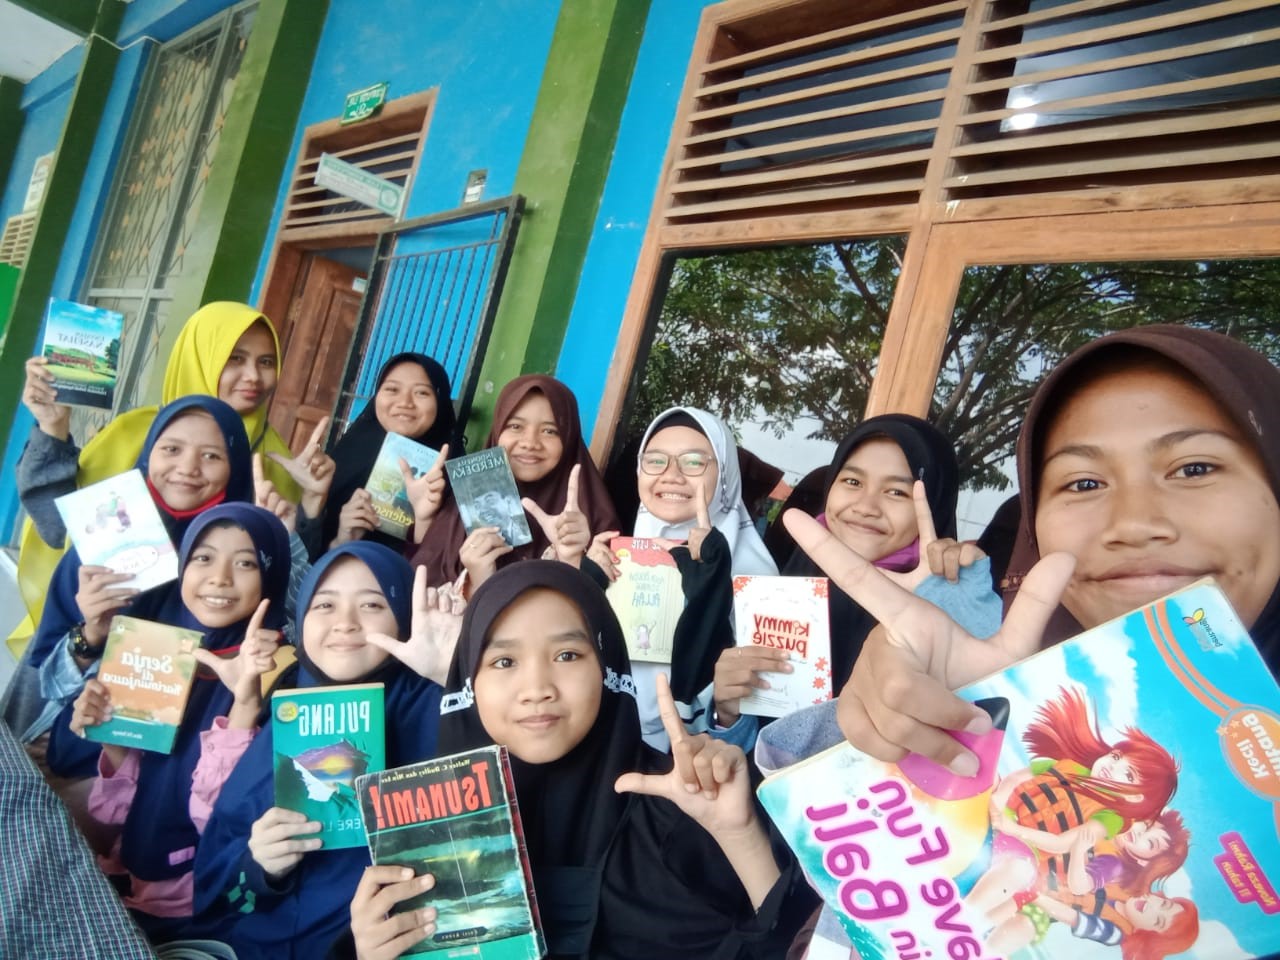 GLN Terus Konsolidasi untuk Genjot Minat Baca Masyarakat